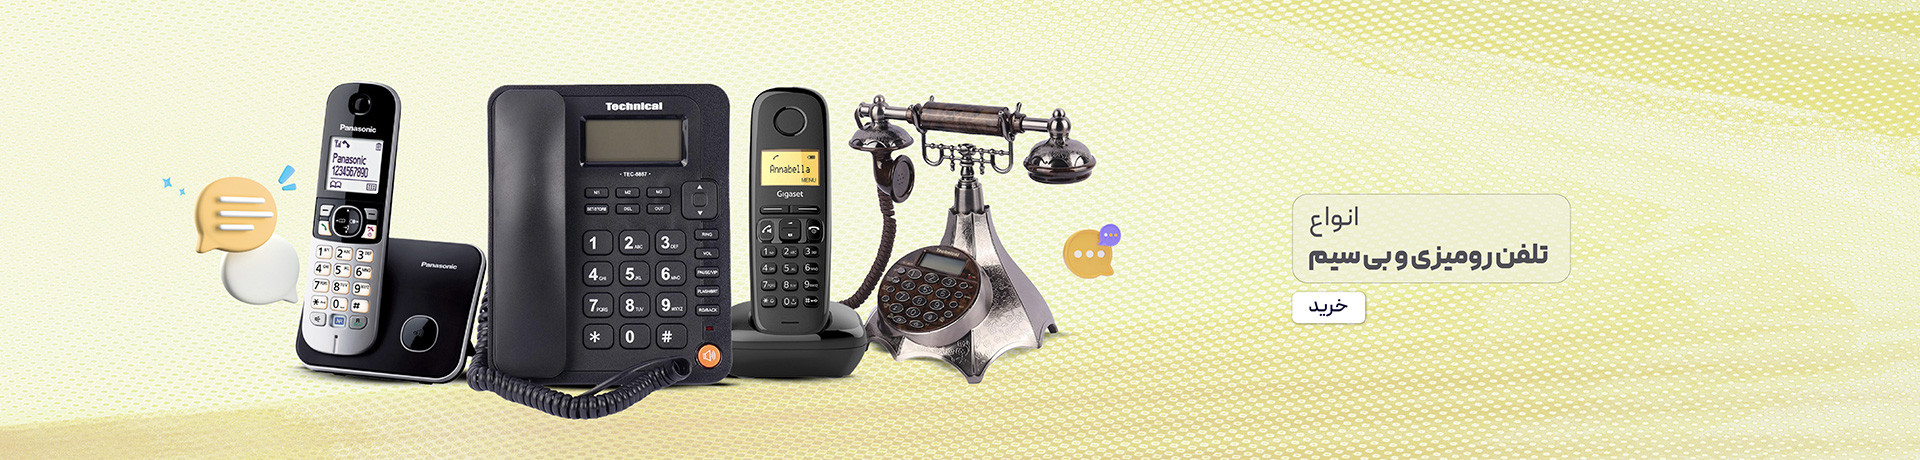 خرید و لیست قیمت انواع تلفن پاناسونیک